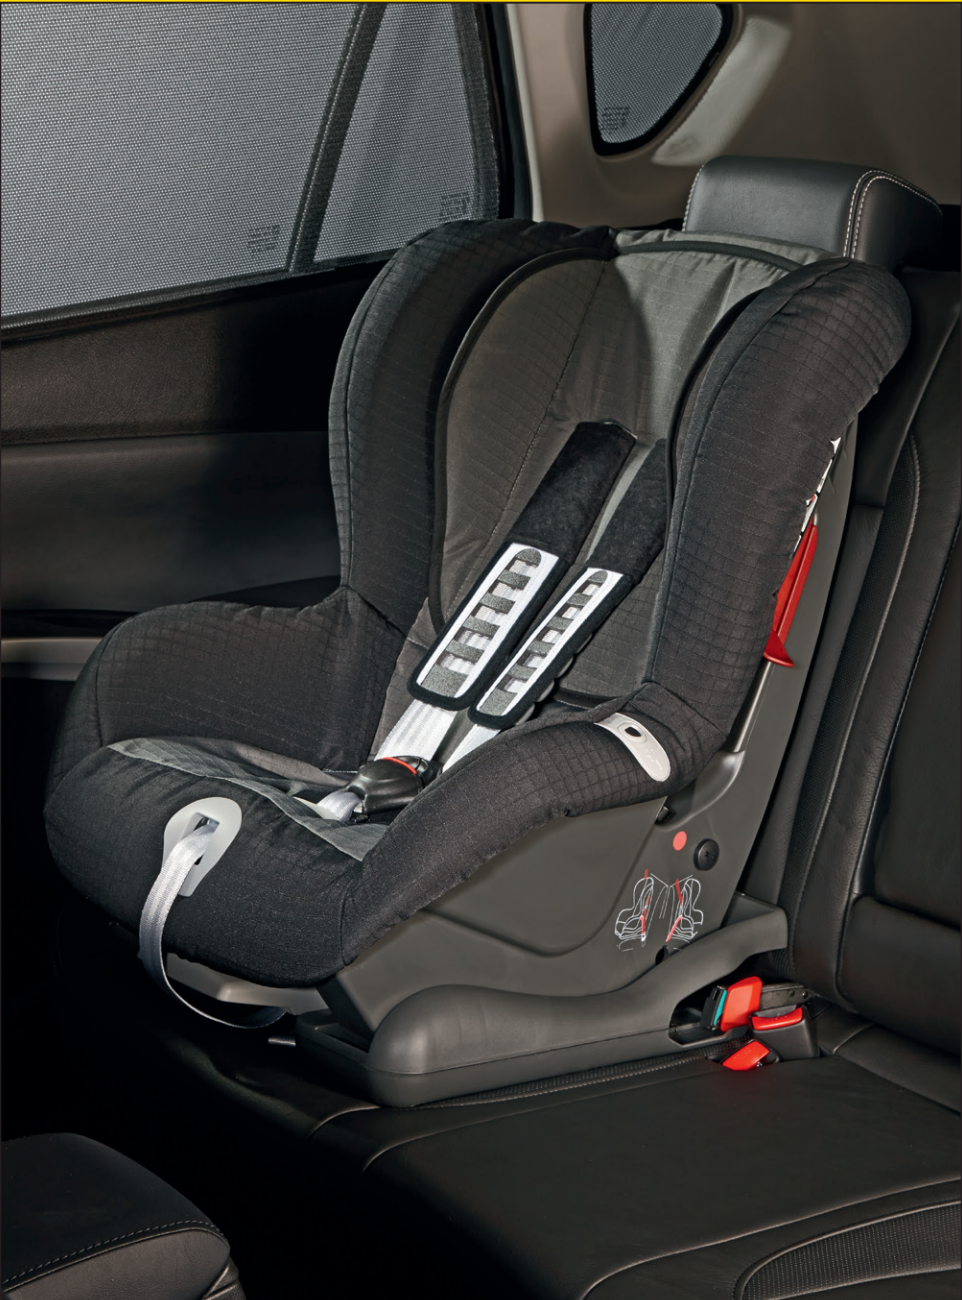 Suzuki Child Seat (Britax/Romer, 'DUO, Suzuki Child Seats